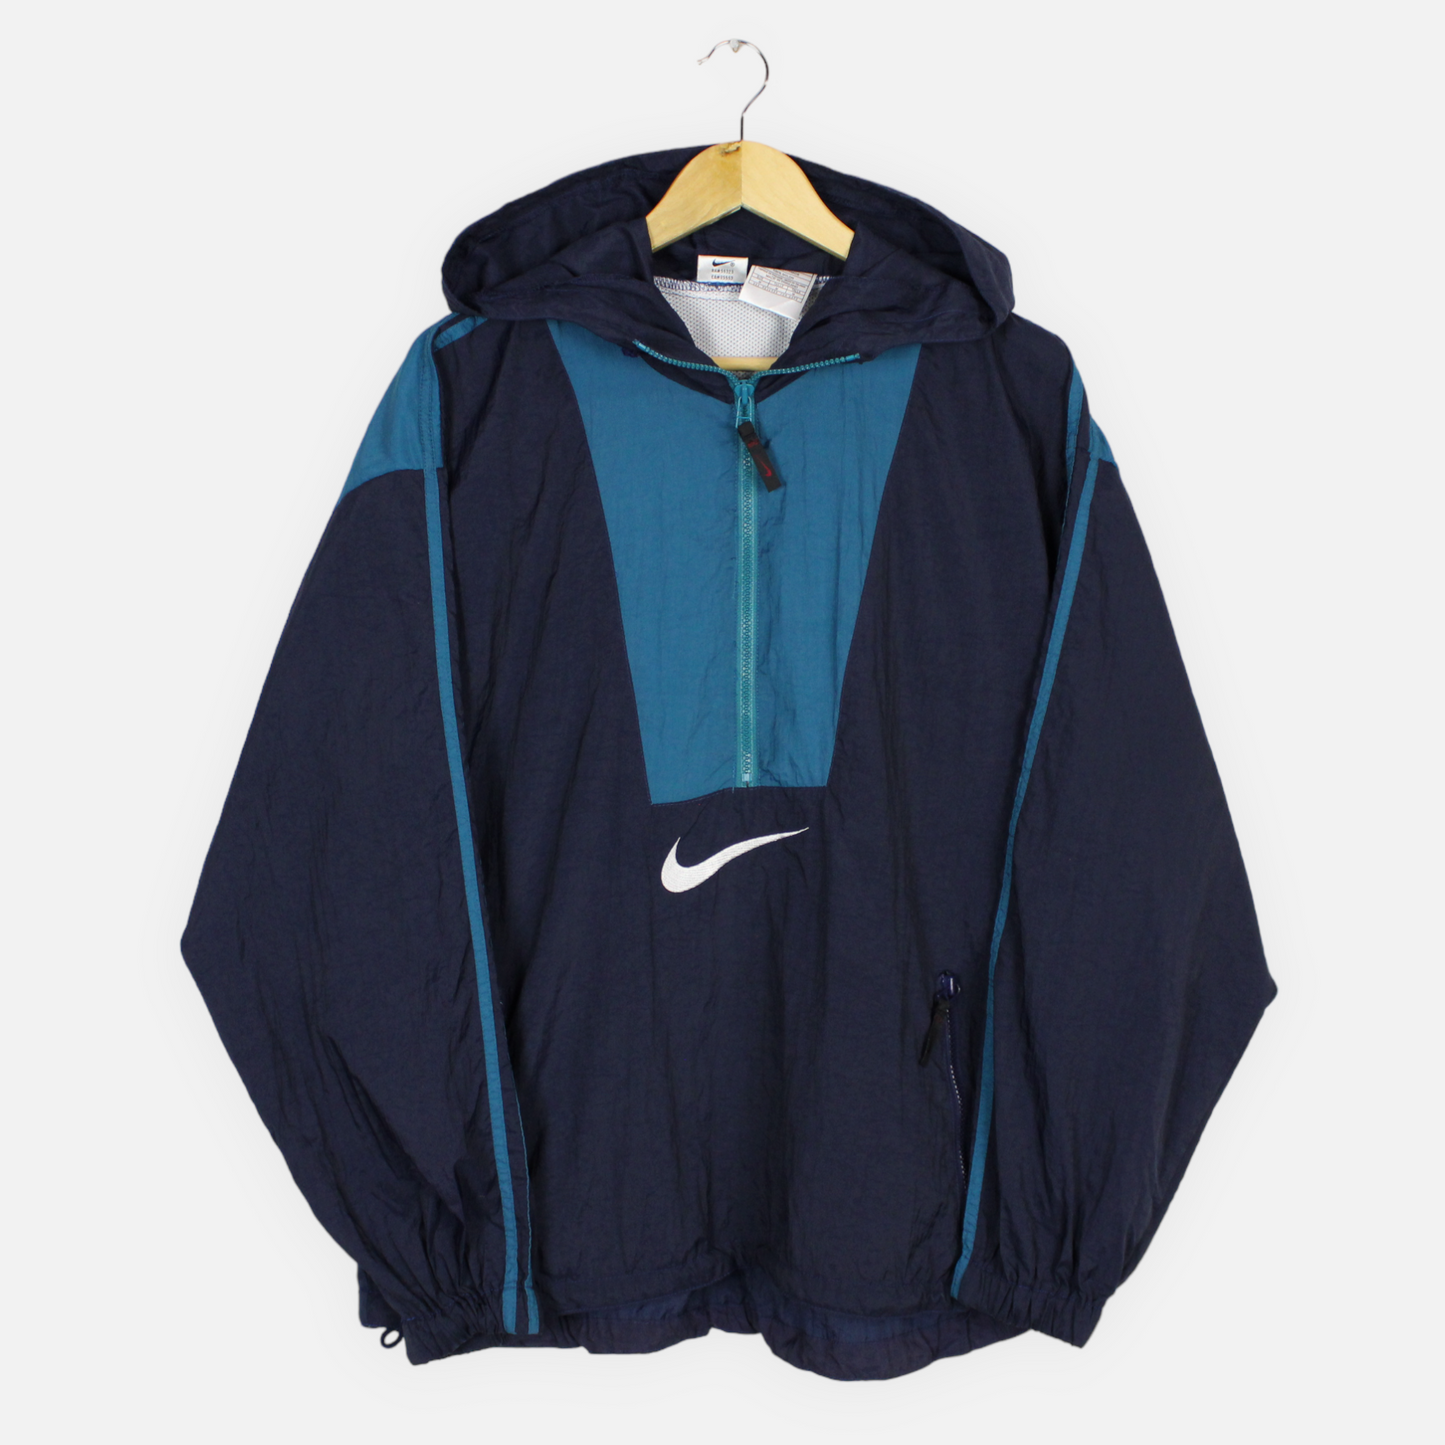 Vintage Nike 1/4 Zip Hooded Jacket - M